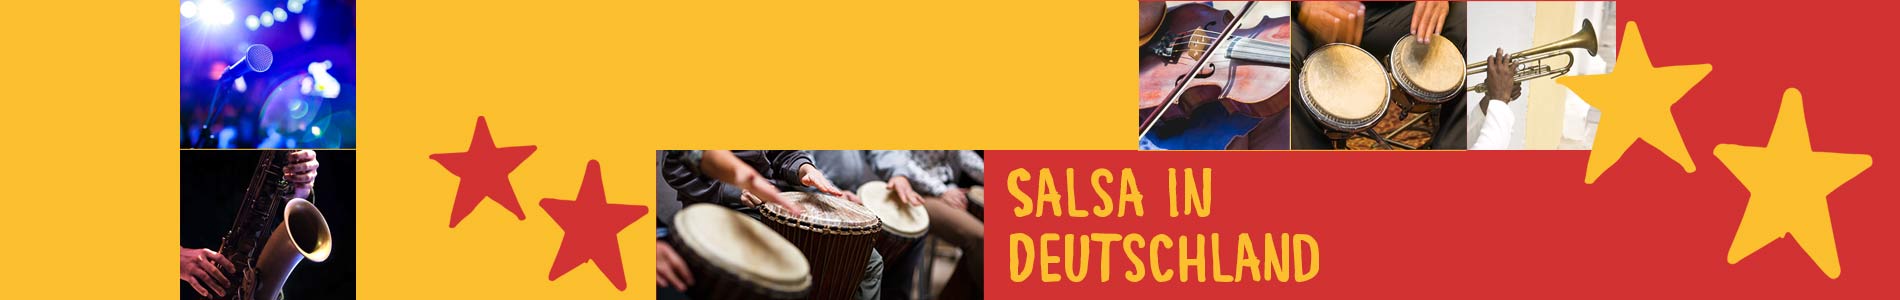 Salsa in Braschwitz – Salsa lernen und tanzen, Tanzkurse, Partys, Veranstaltungen